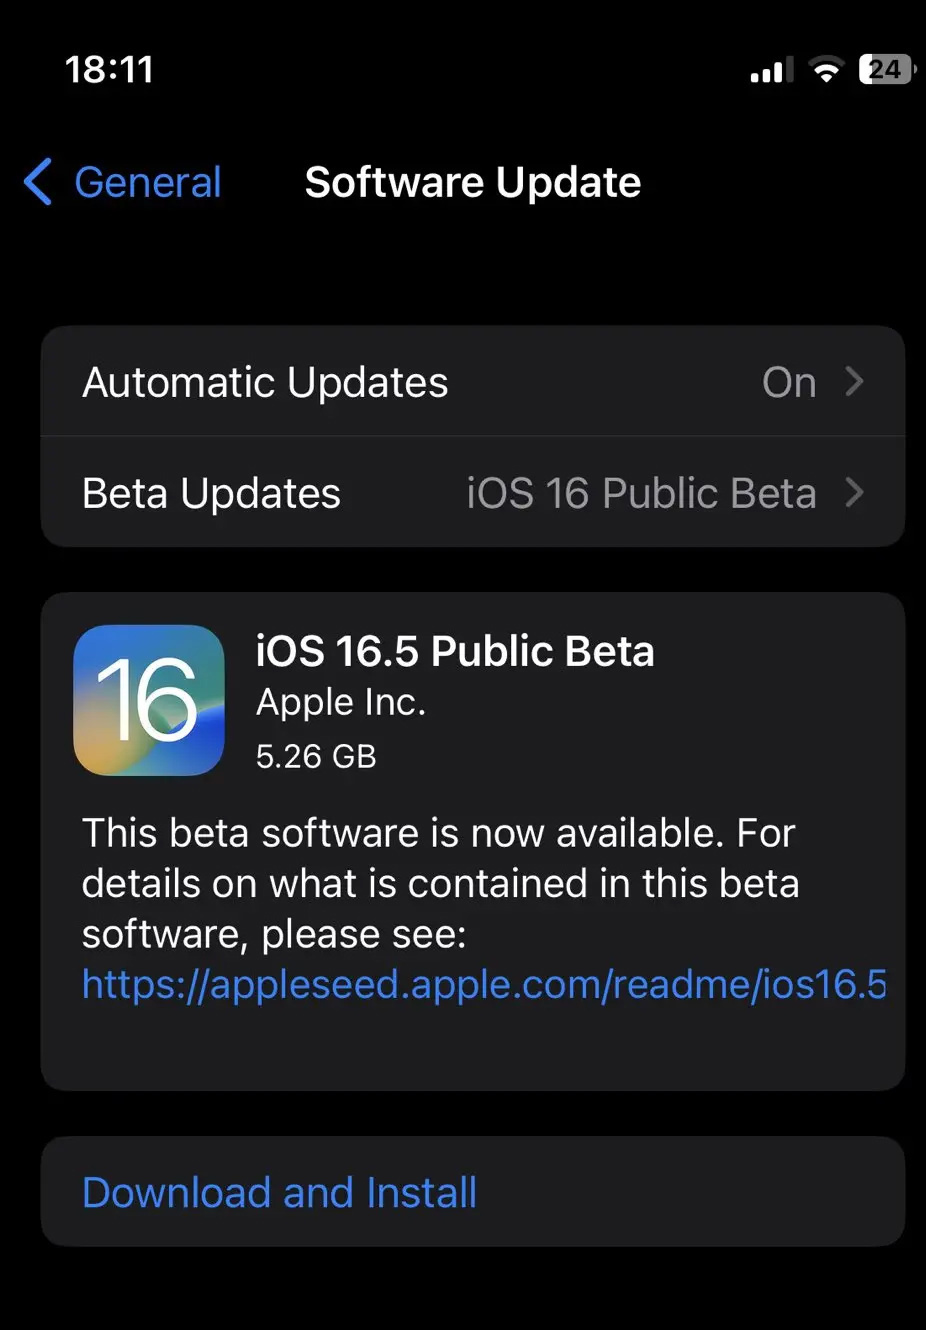 苹果发布 iOS/iPadOS 16.5 首个公开测试版本